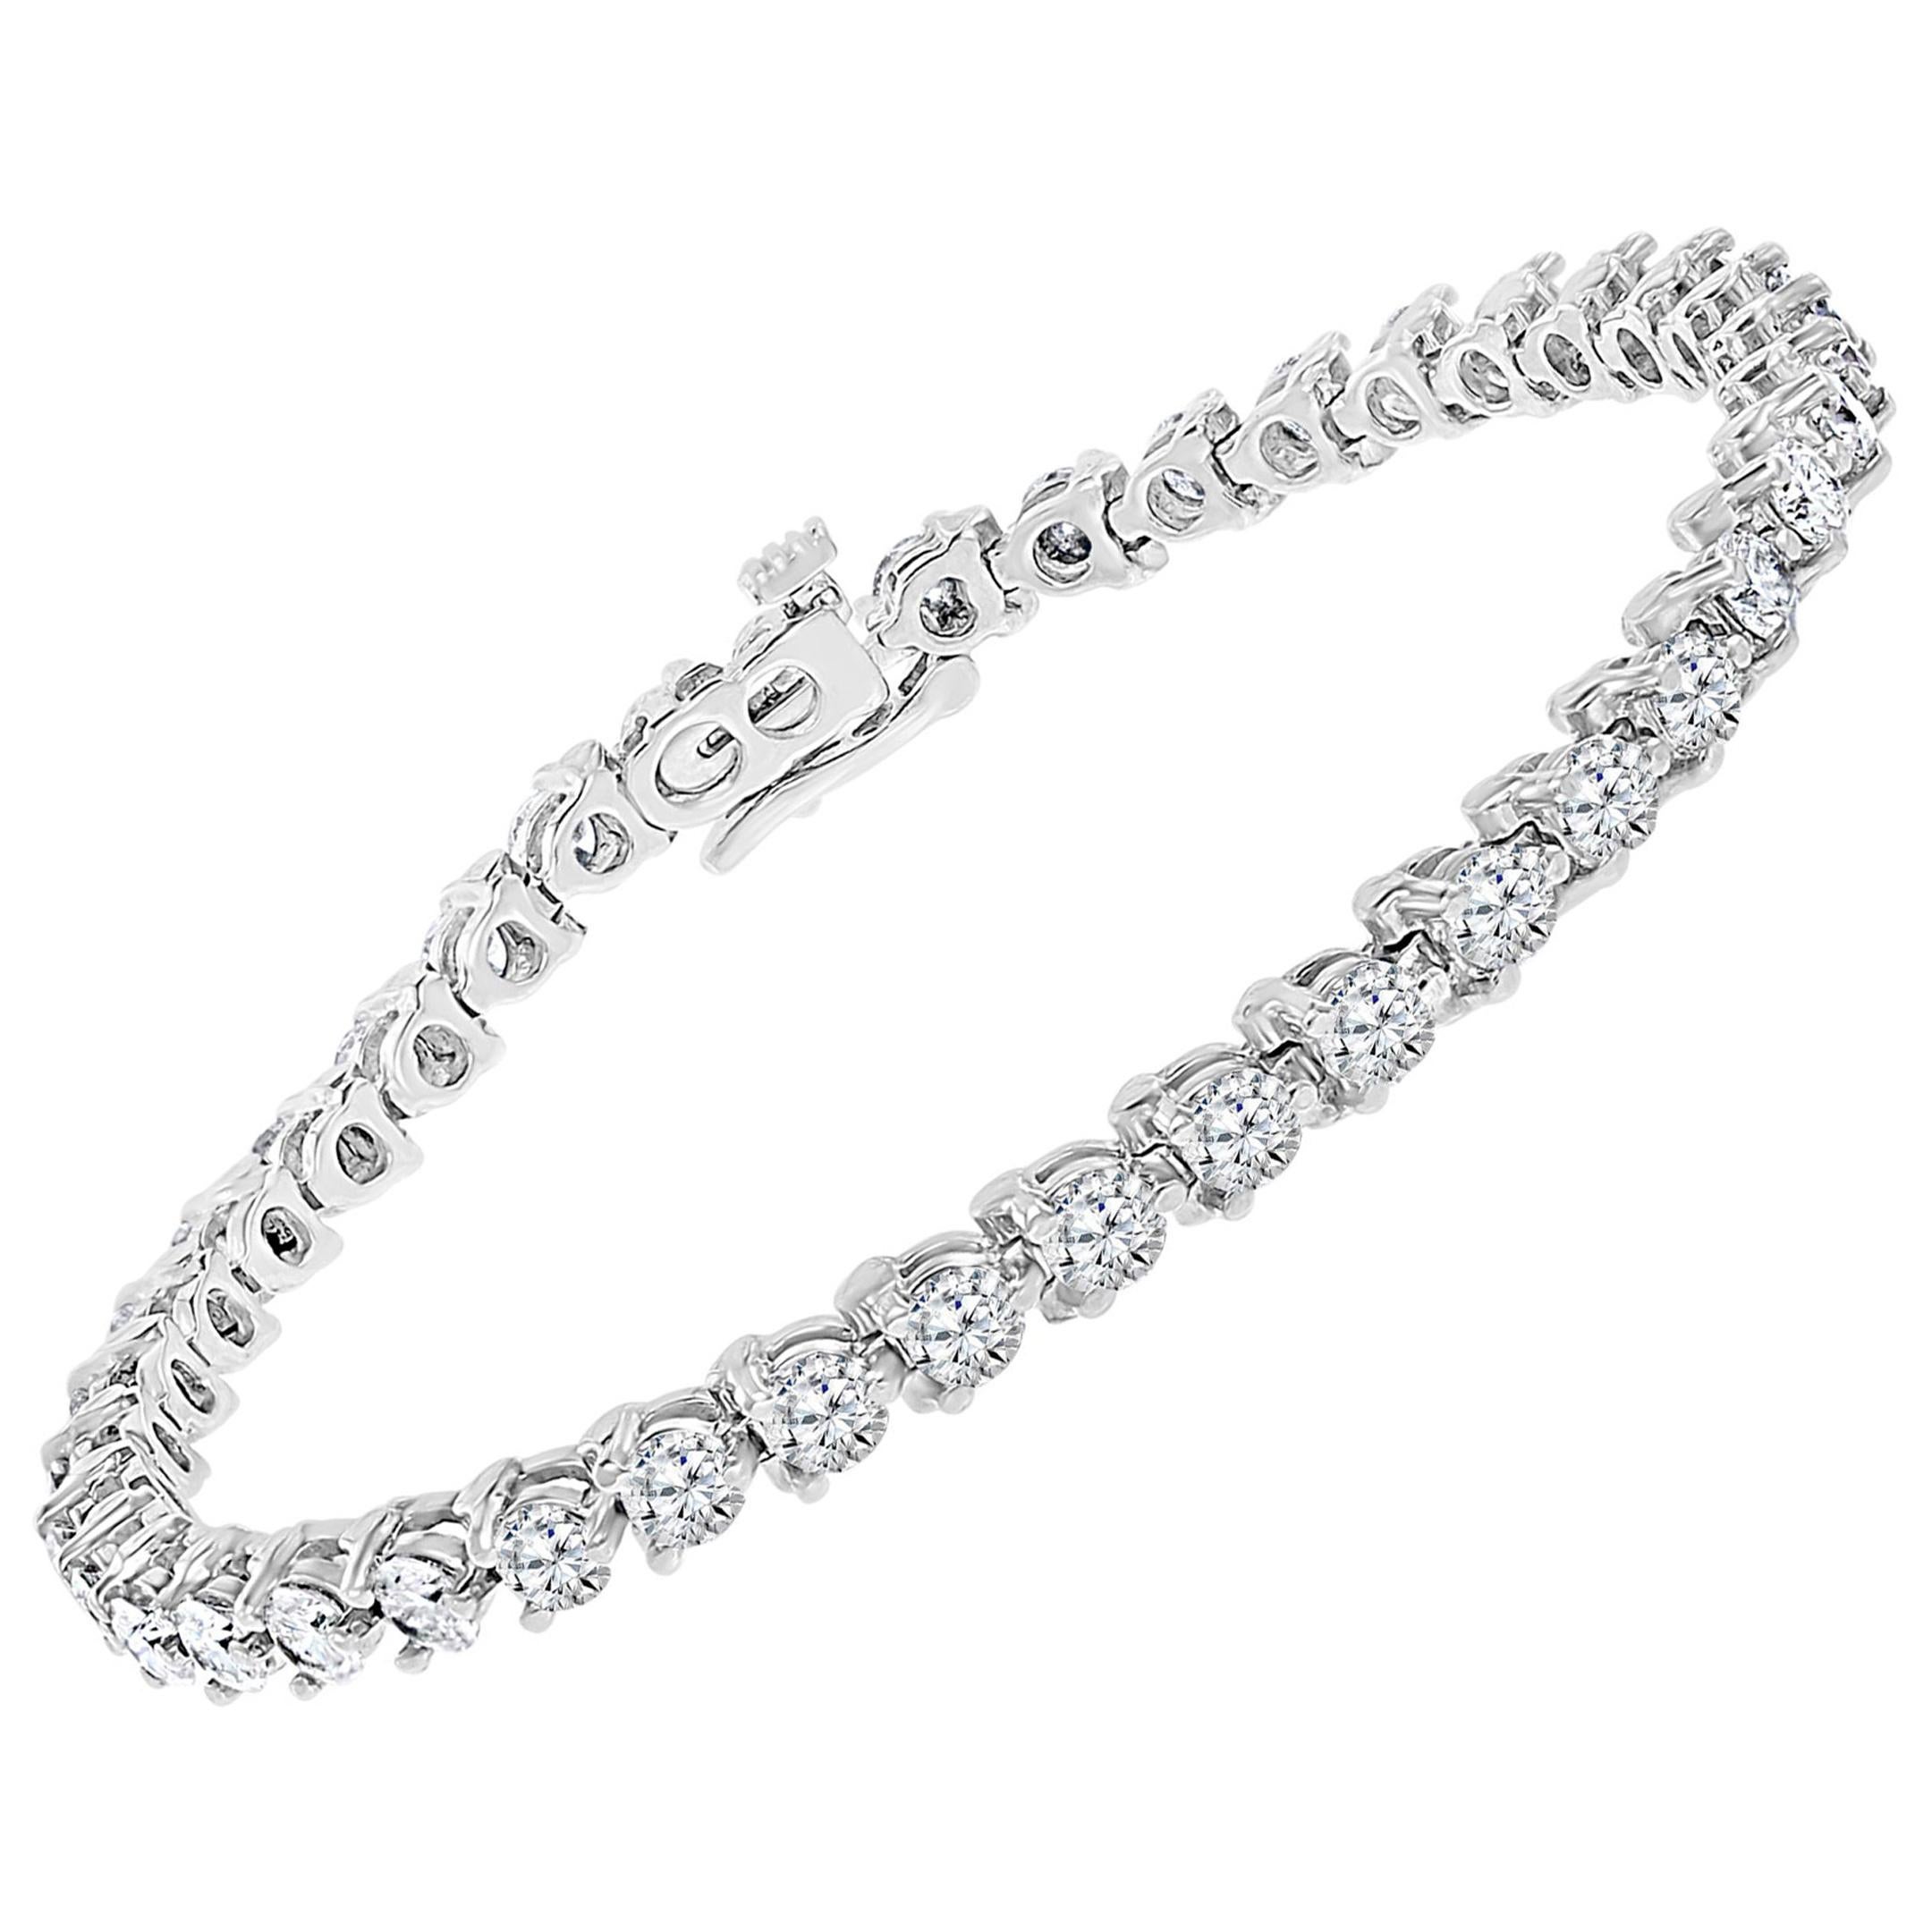 Bracelet tennis de 40 diamants ronds de 14 à 15 pointes chacun en or blanc 14 carats de 5,5 carats